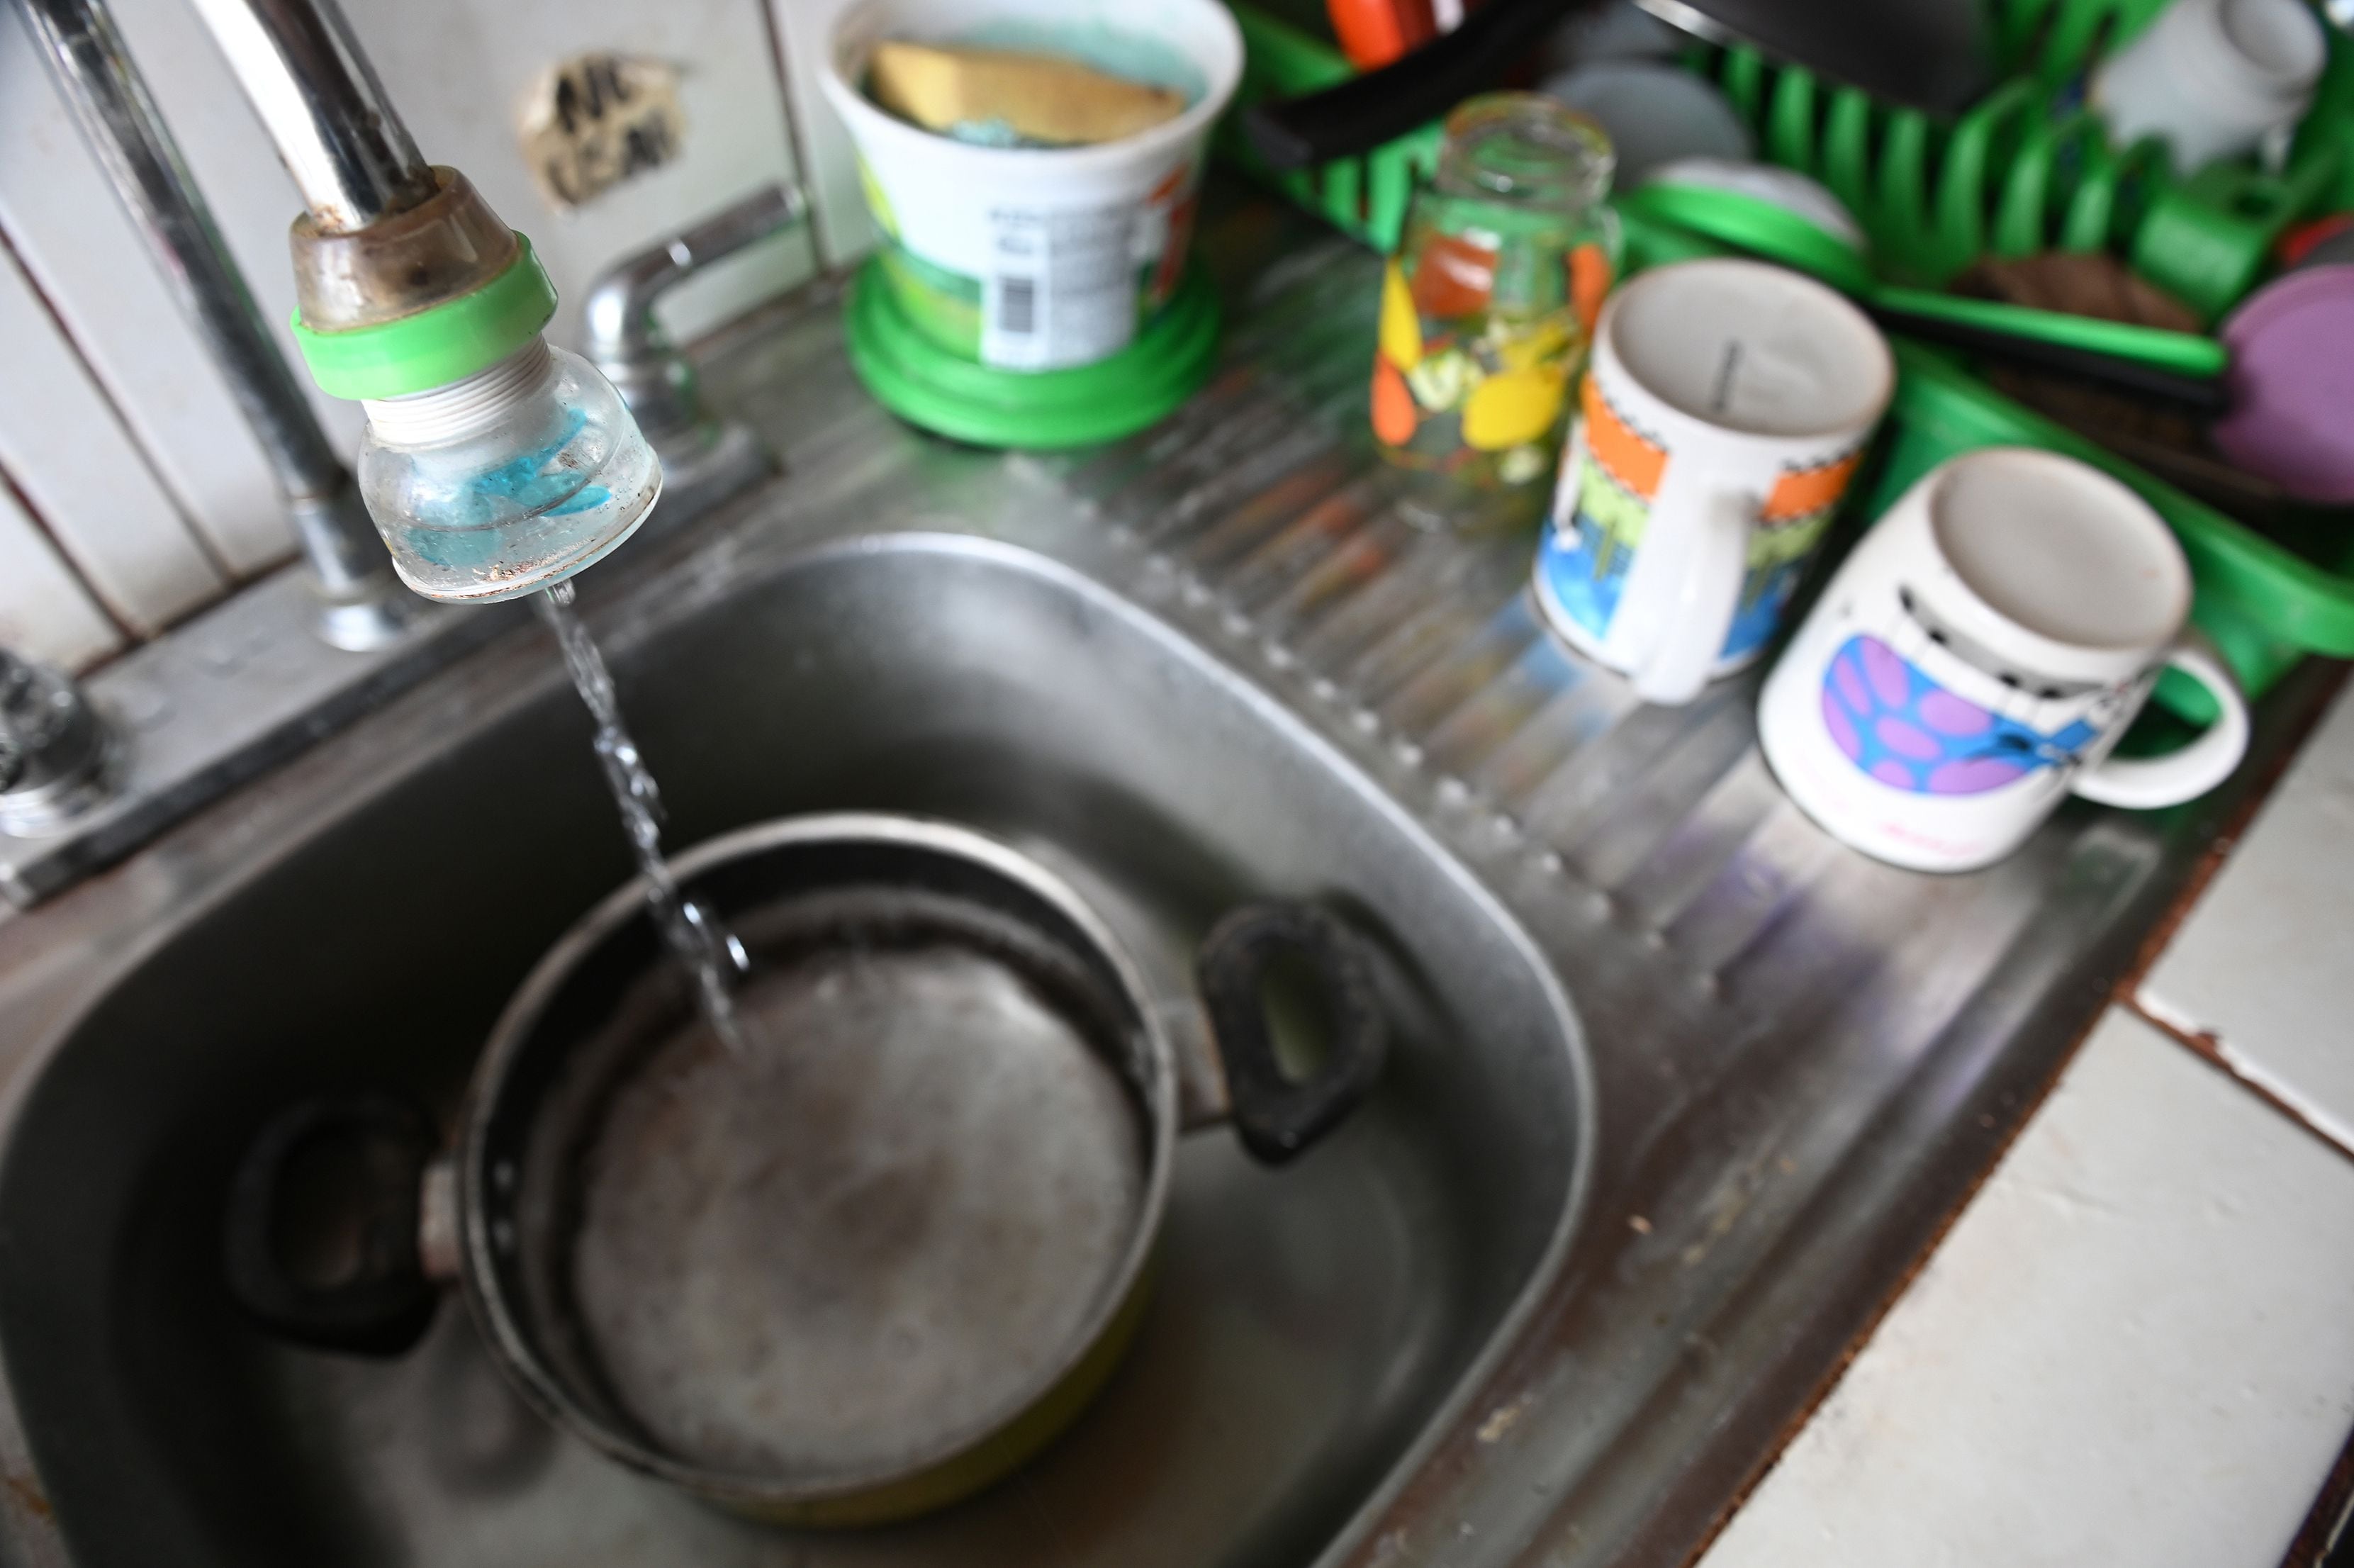 Vecinos de Turrialba alertan de que agua les está llegando con ‘olor extraño a canfín o gasolina’